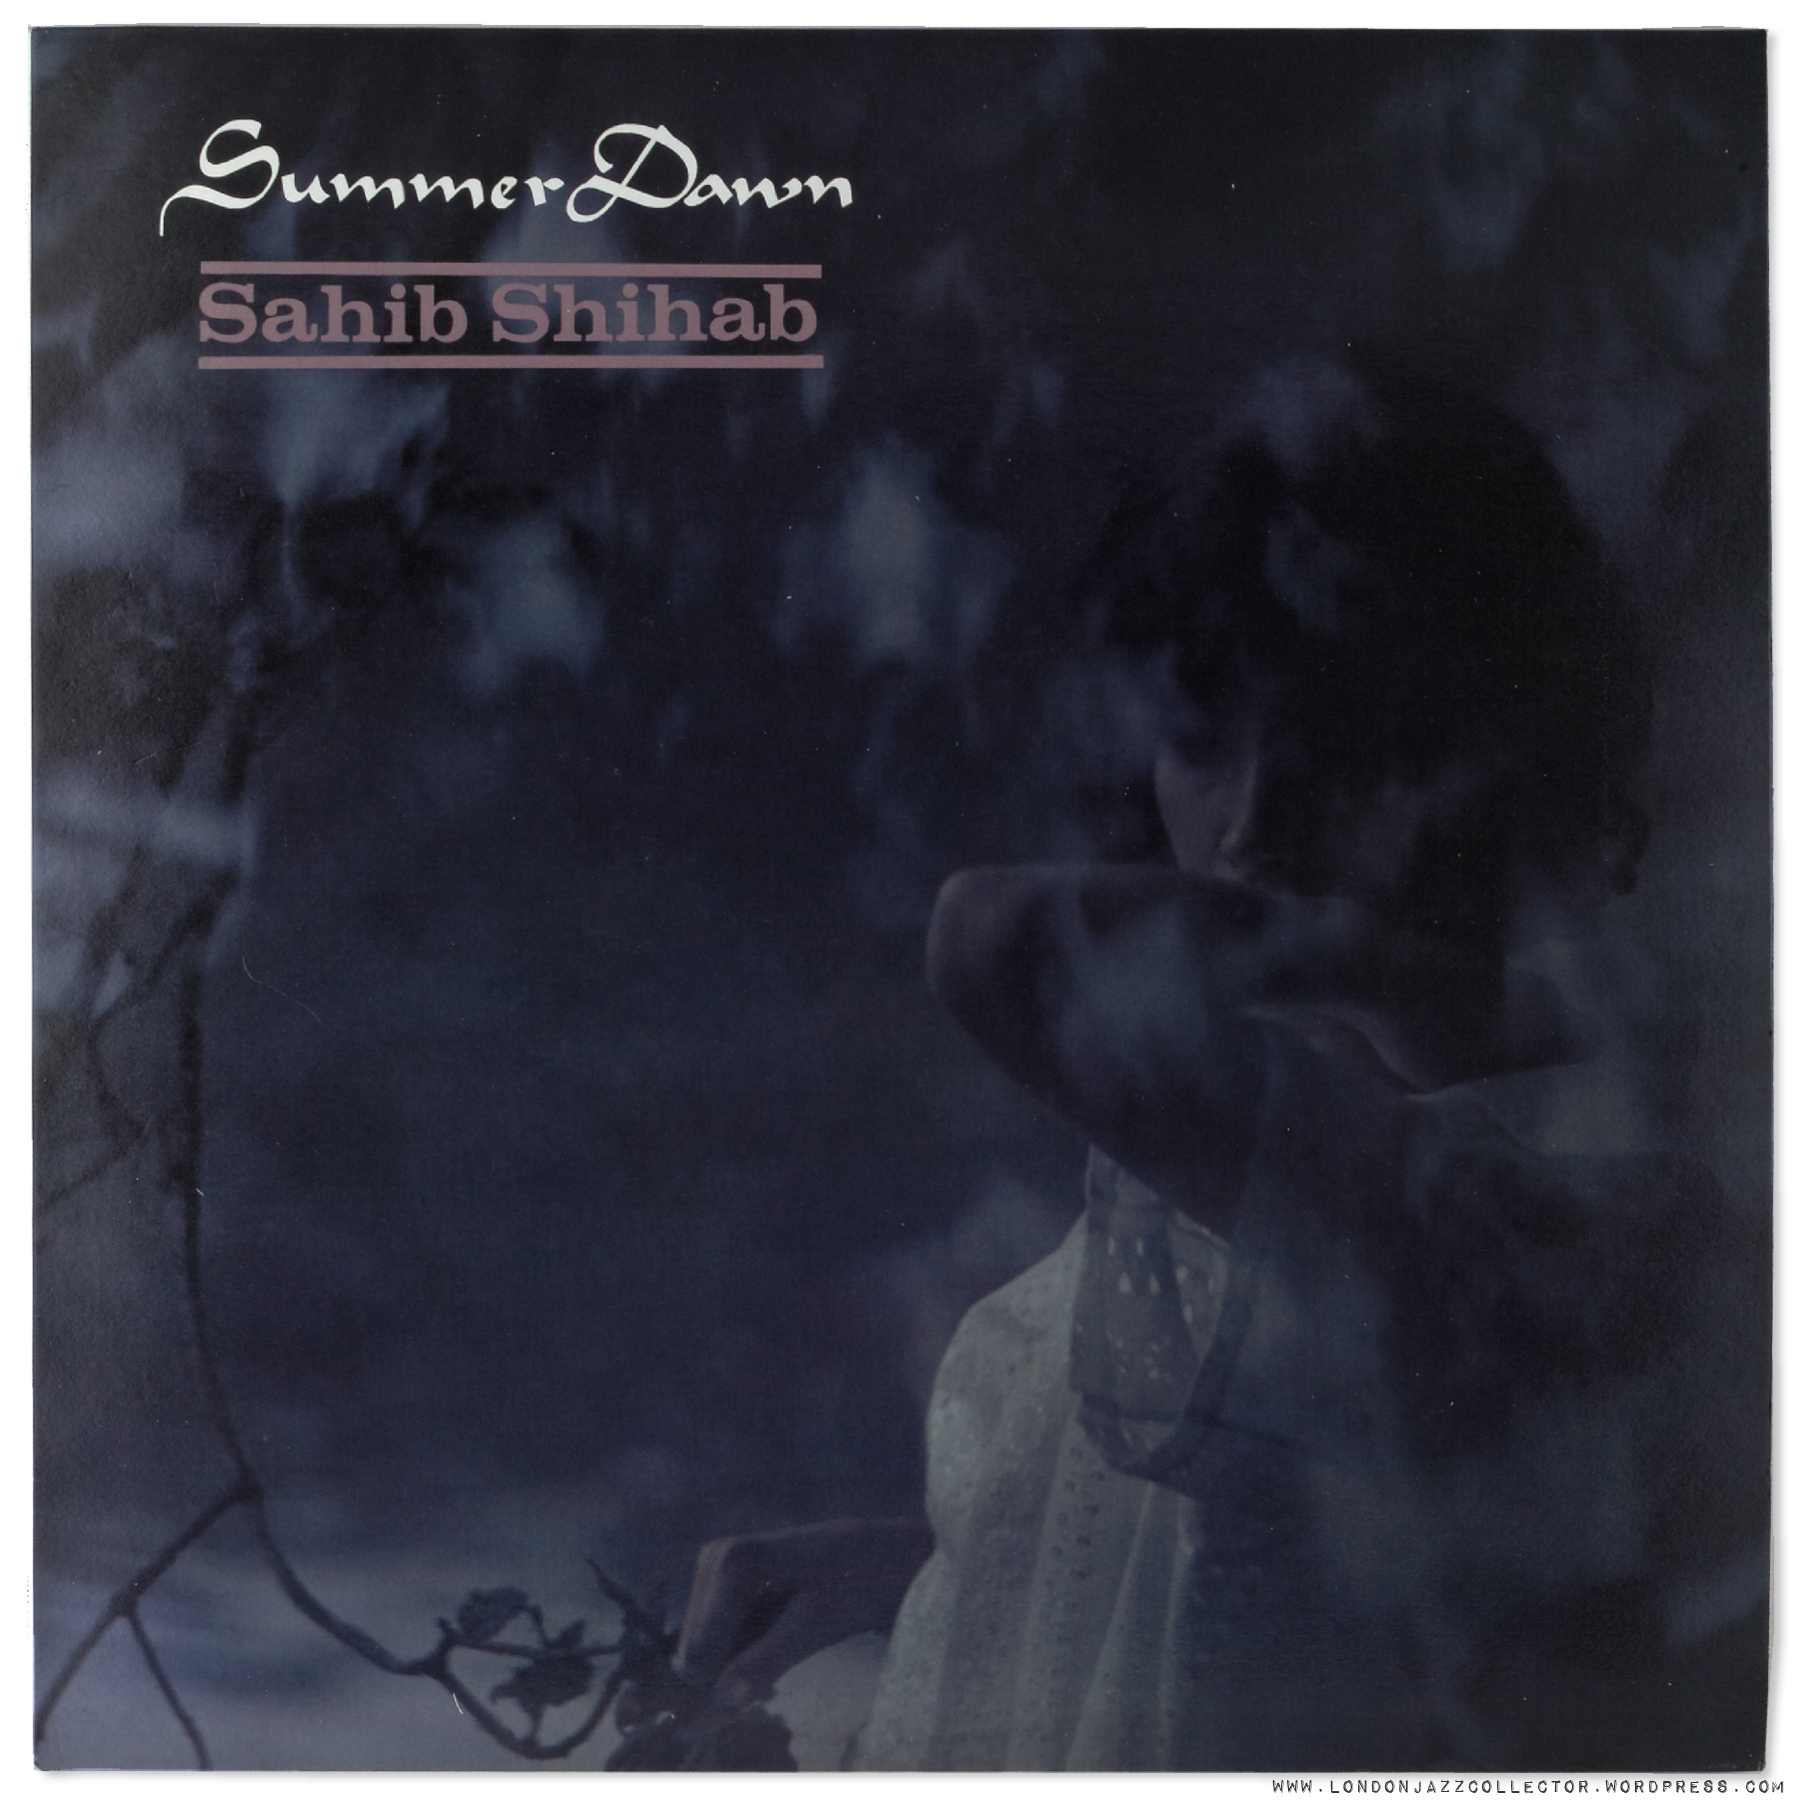 sahib-shihab-summer-dawn-cover-1800-ljc.